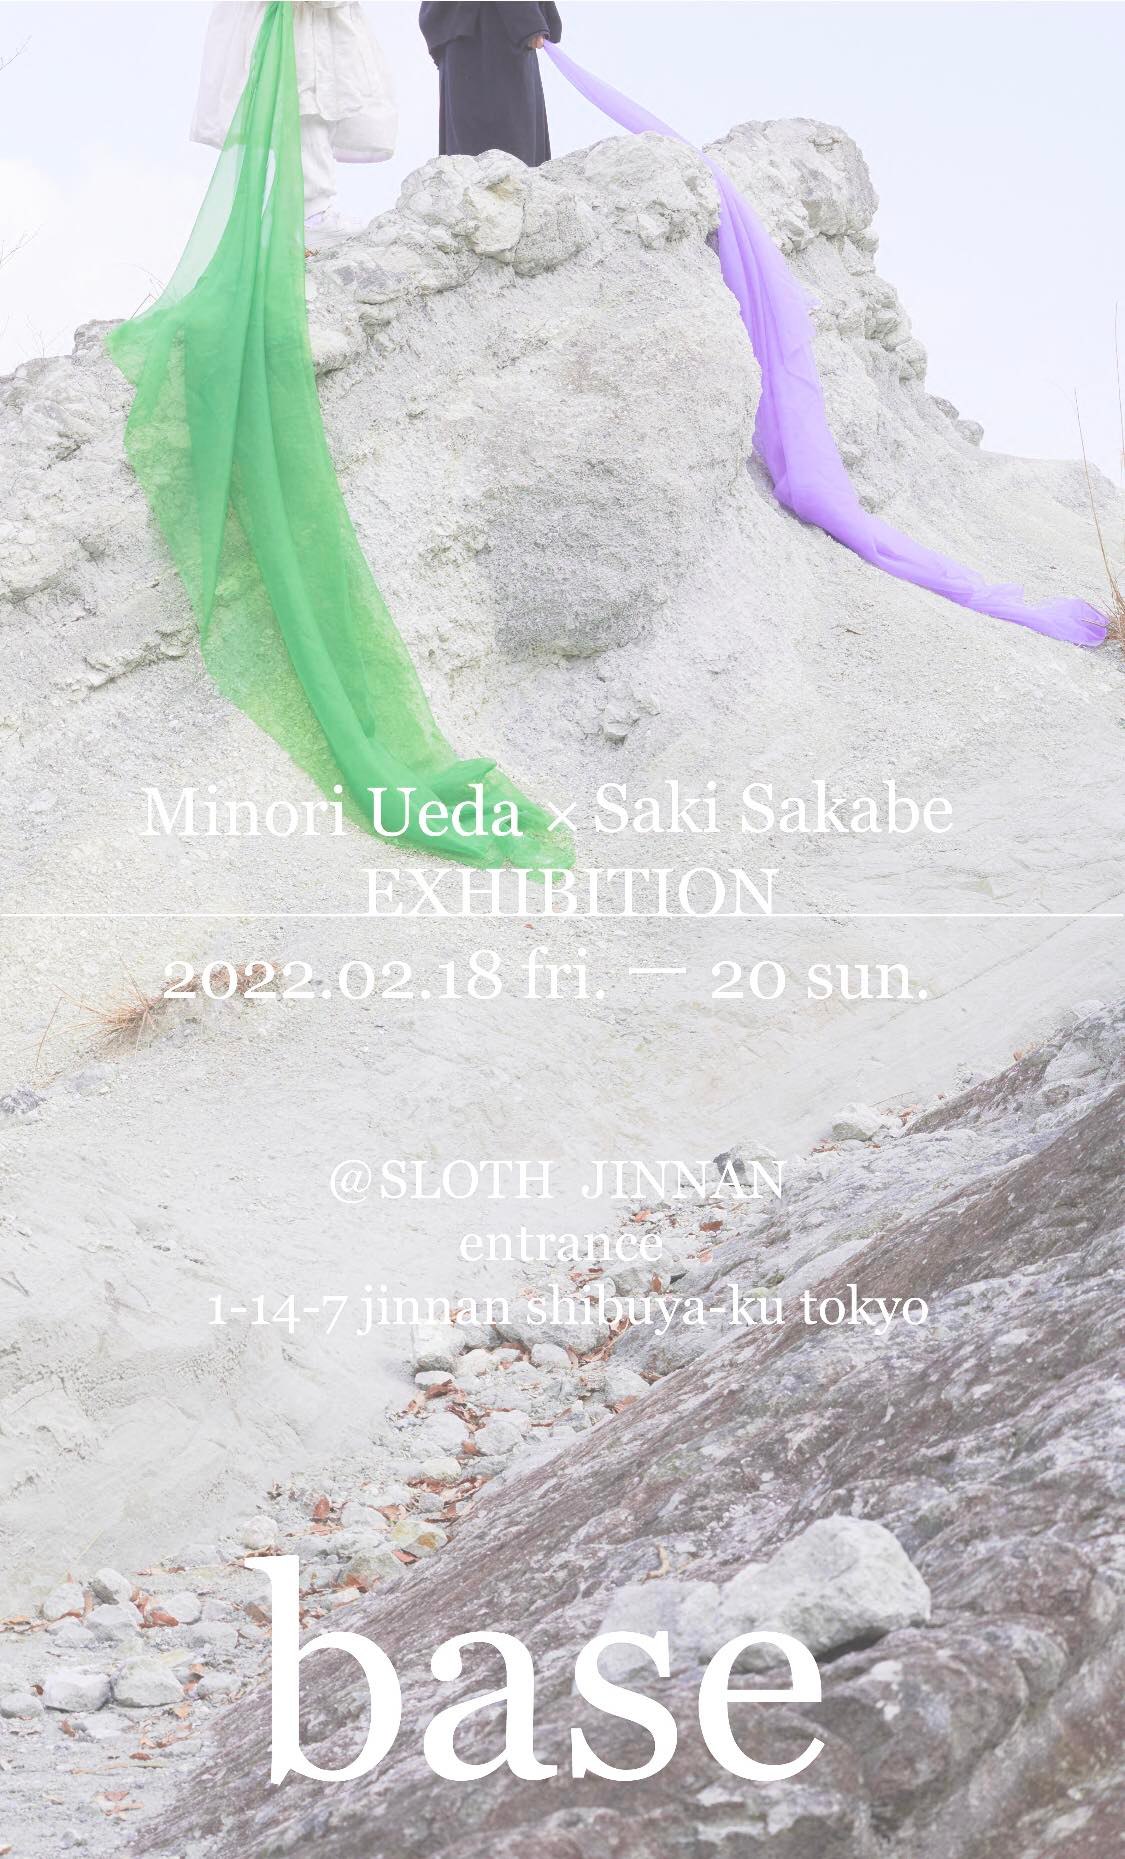 〜EXHIBITION〜 「base」 Minori Ueda × Saki Sakabe